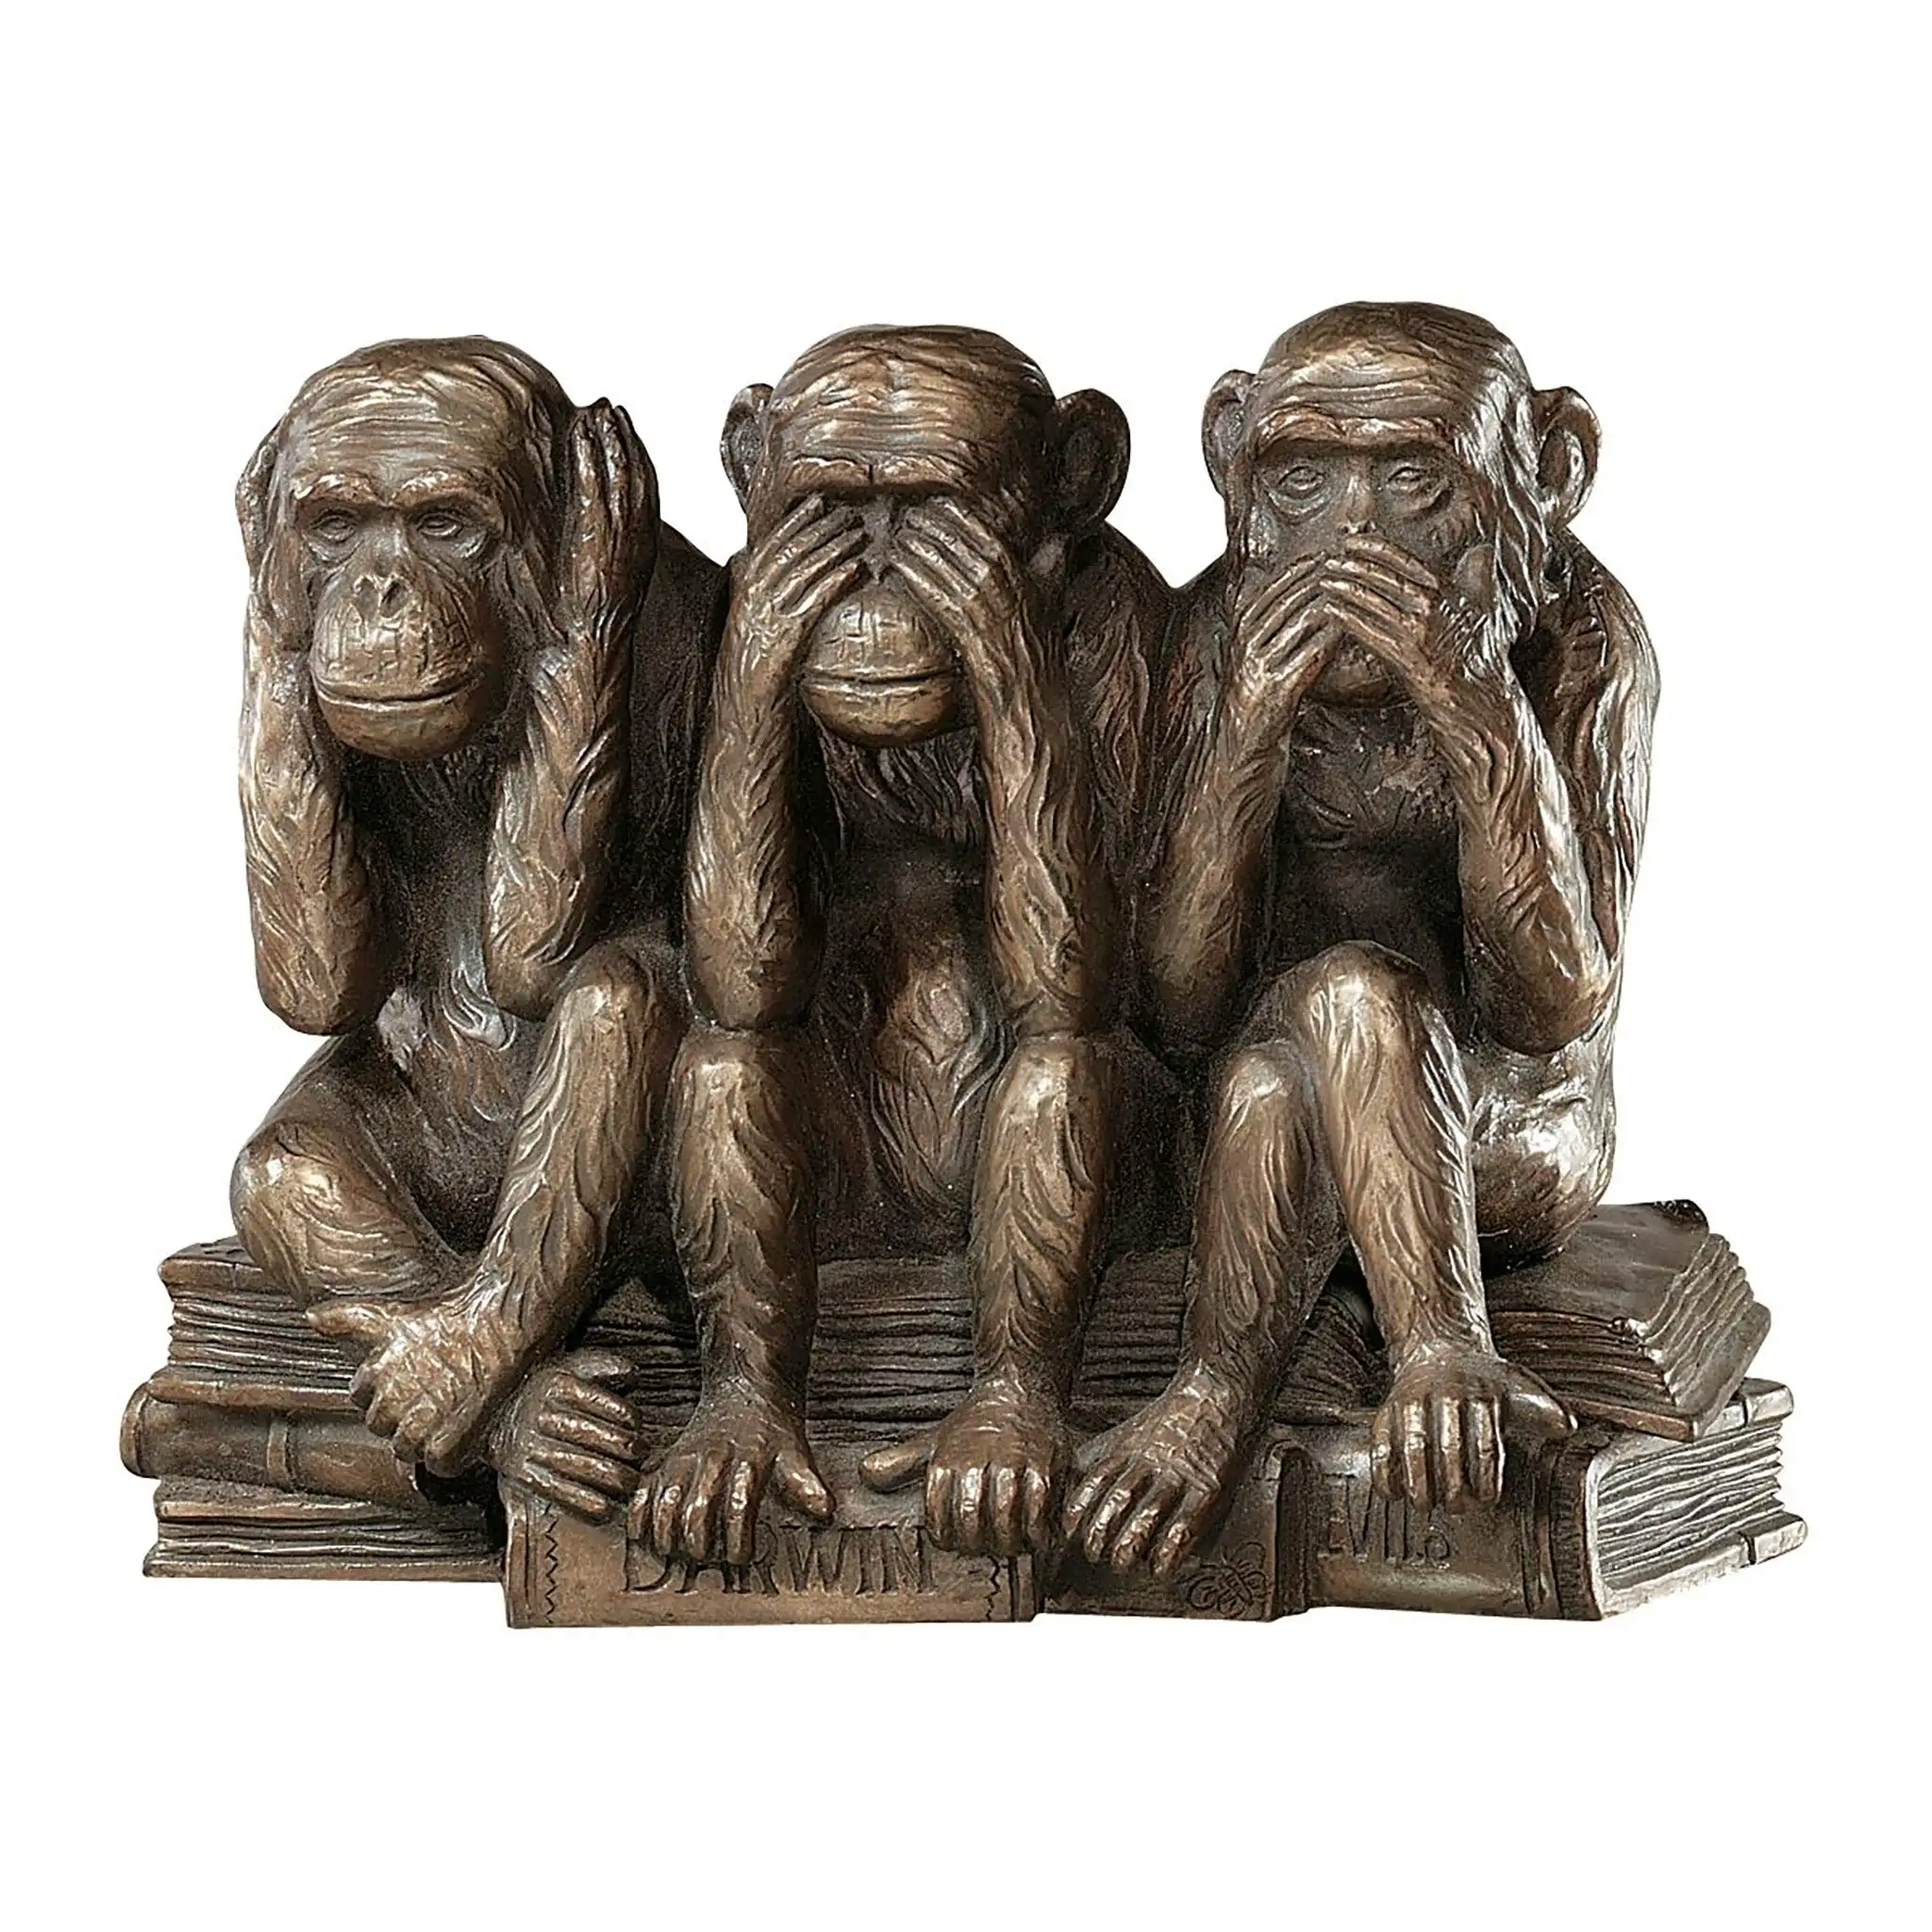 Hayır görmek yok konuşmak hiçbir kötü maymunlar 7 inç hayvan heykeli üç Truths heykeli reçine bronz Finish